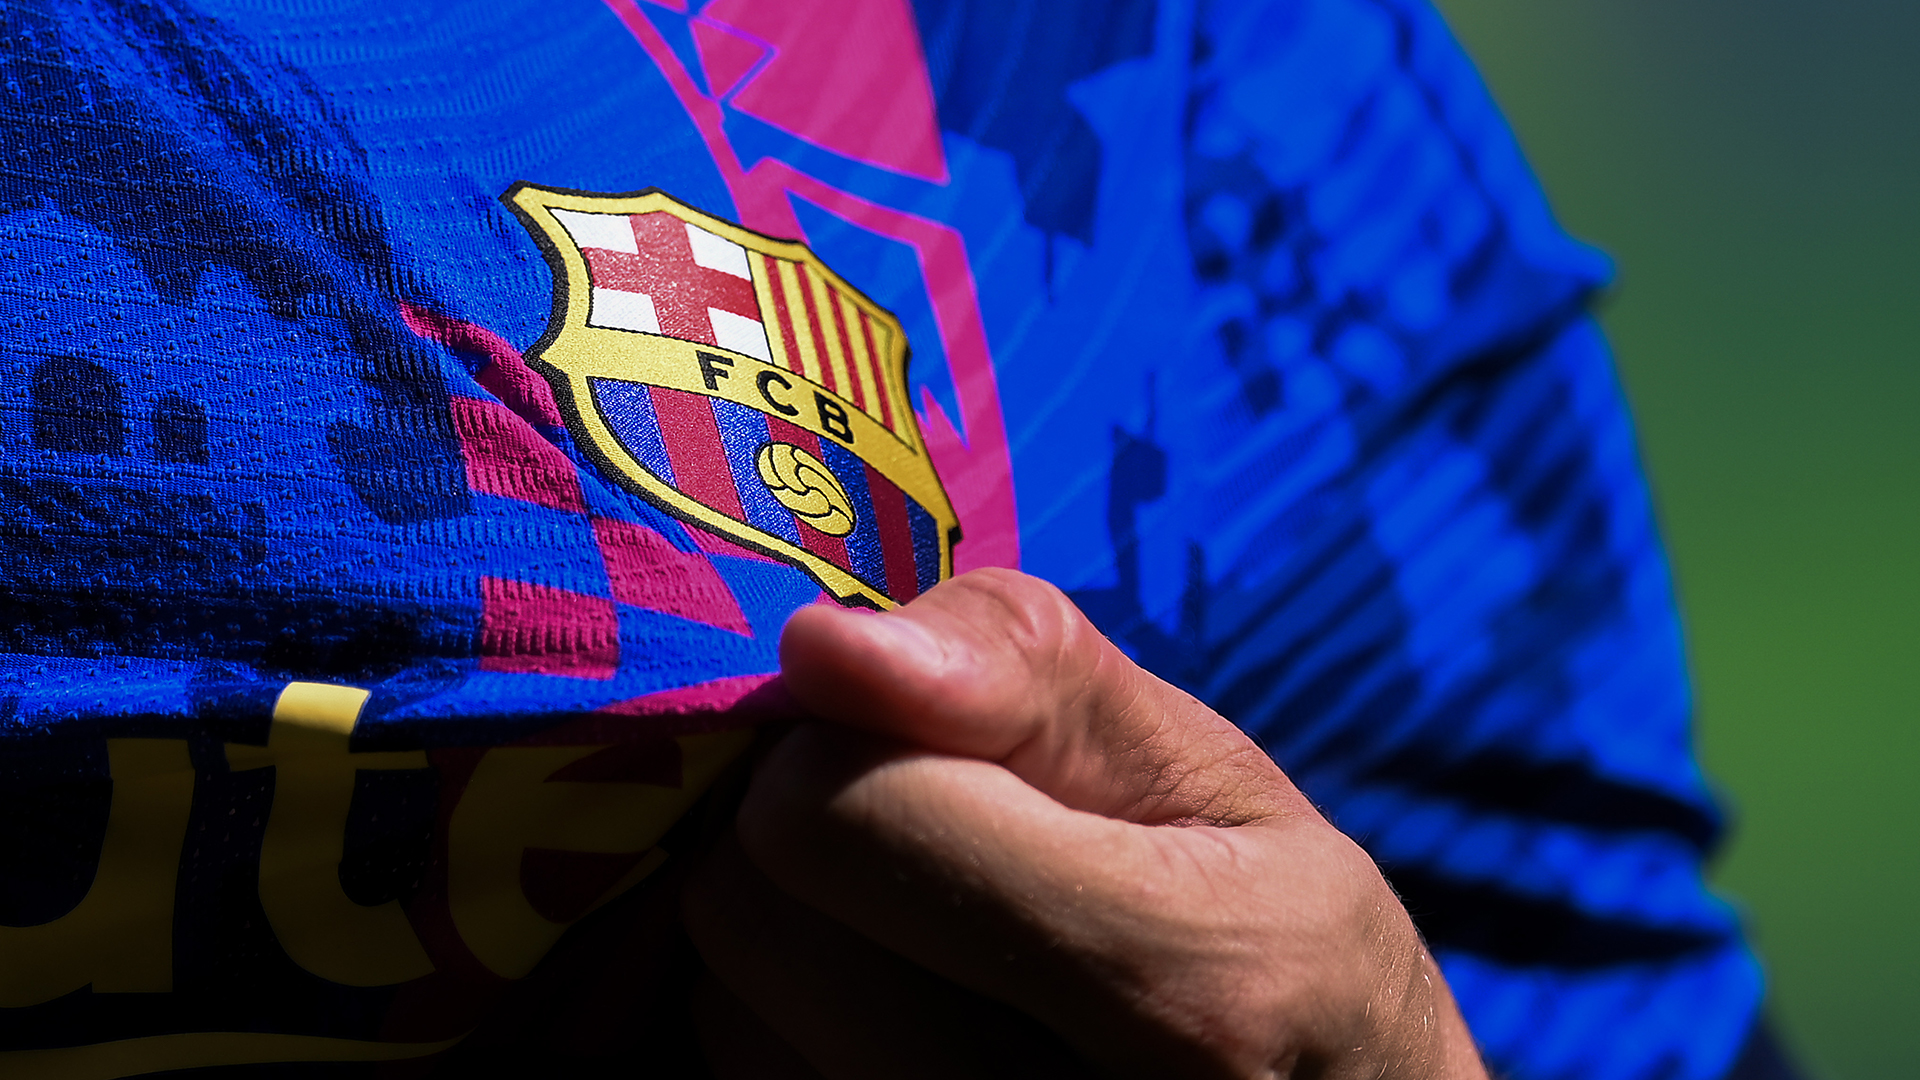 Revelan que el Barcelona FC perdió 130 millones de euros tras la salida de Messi